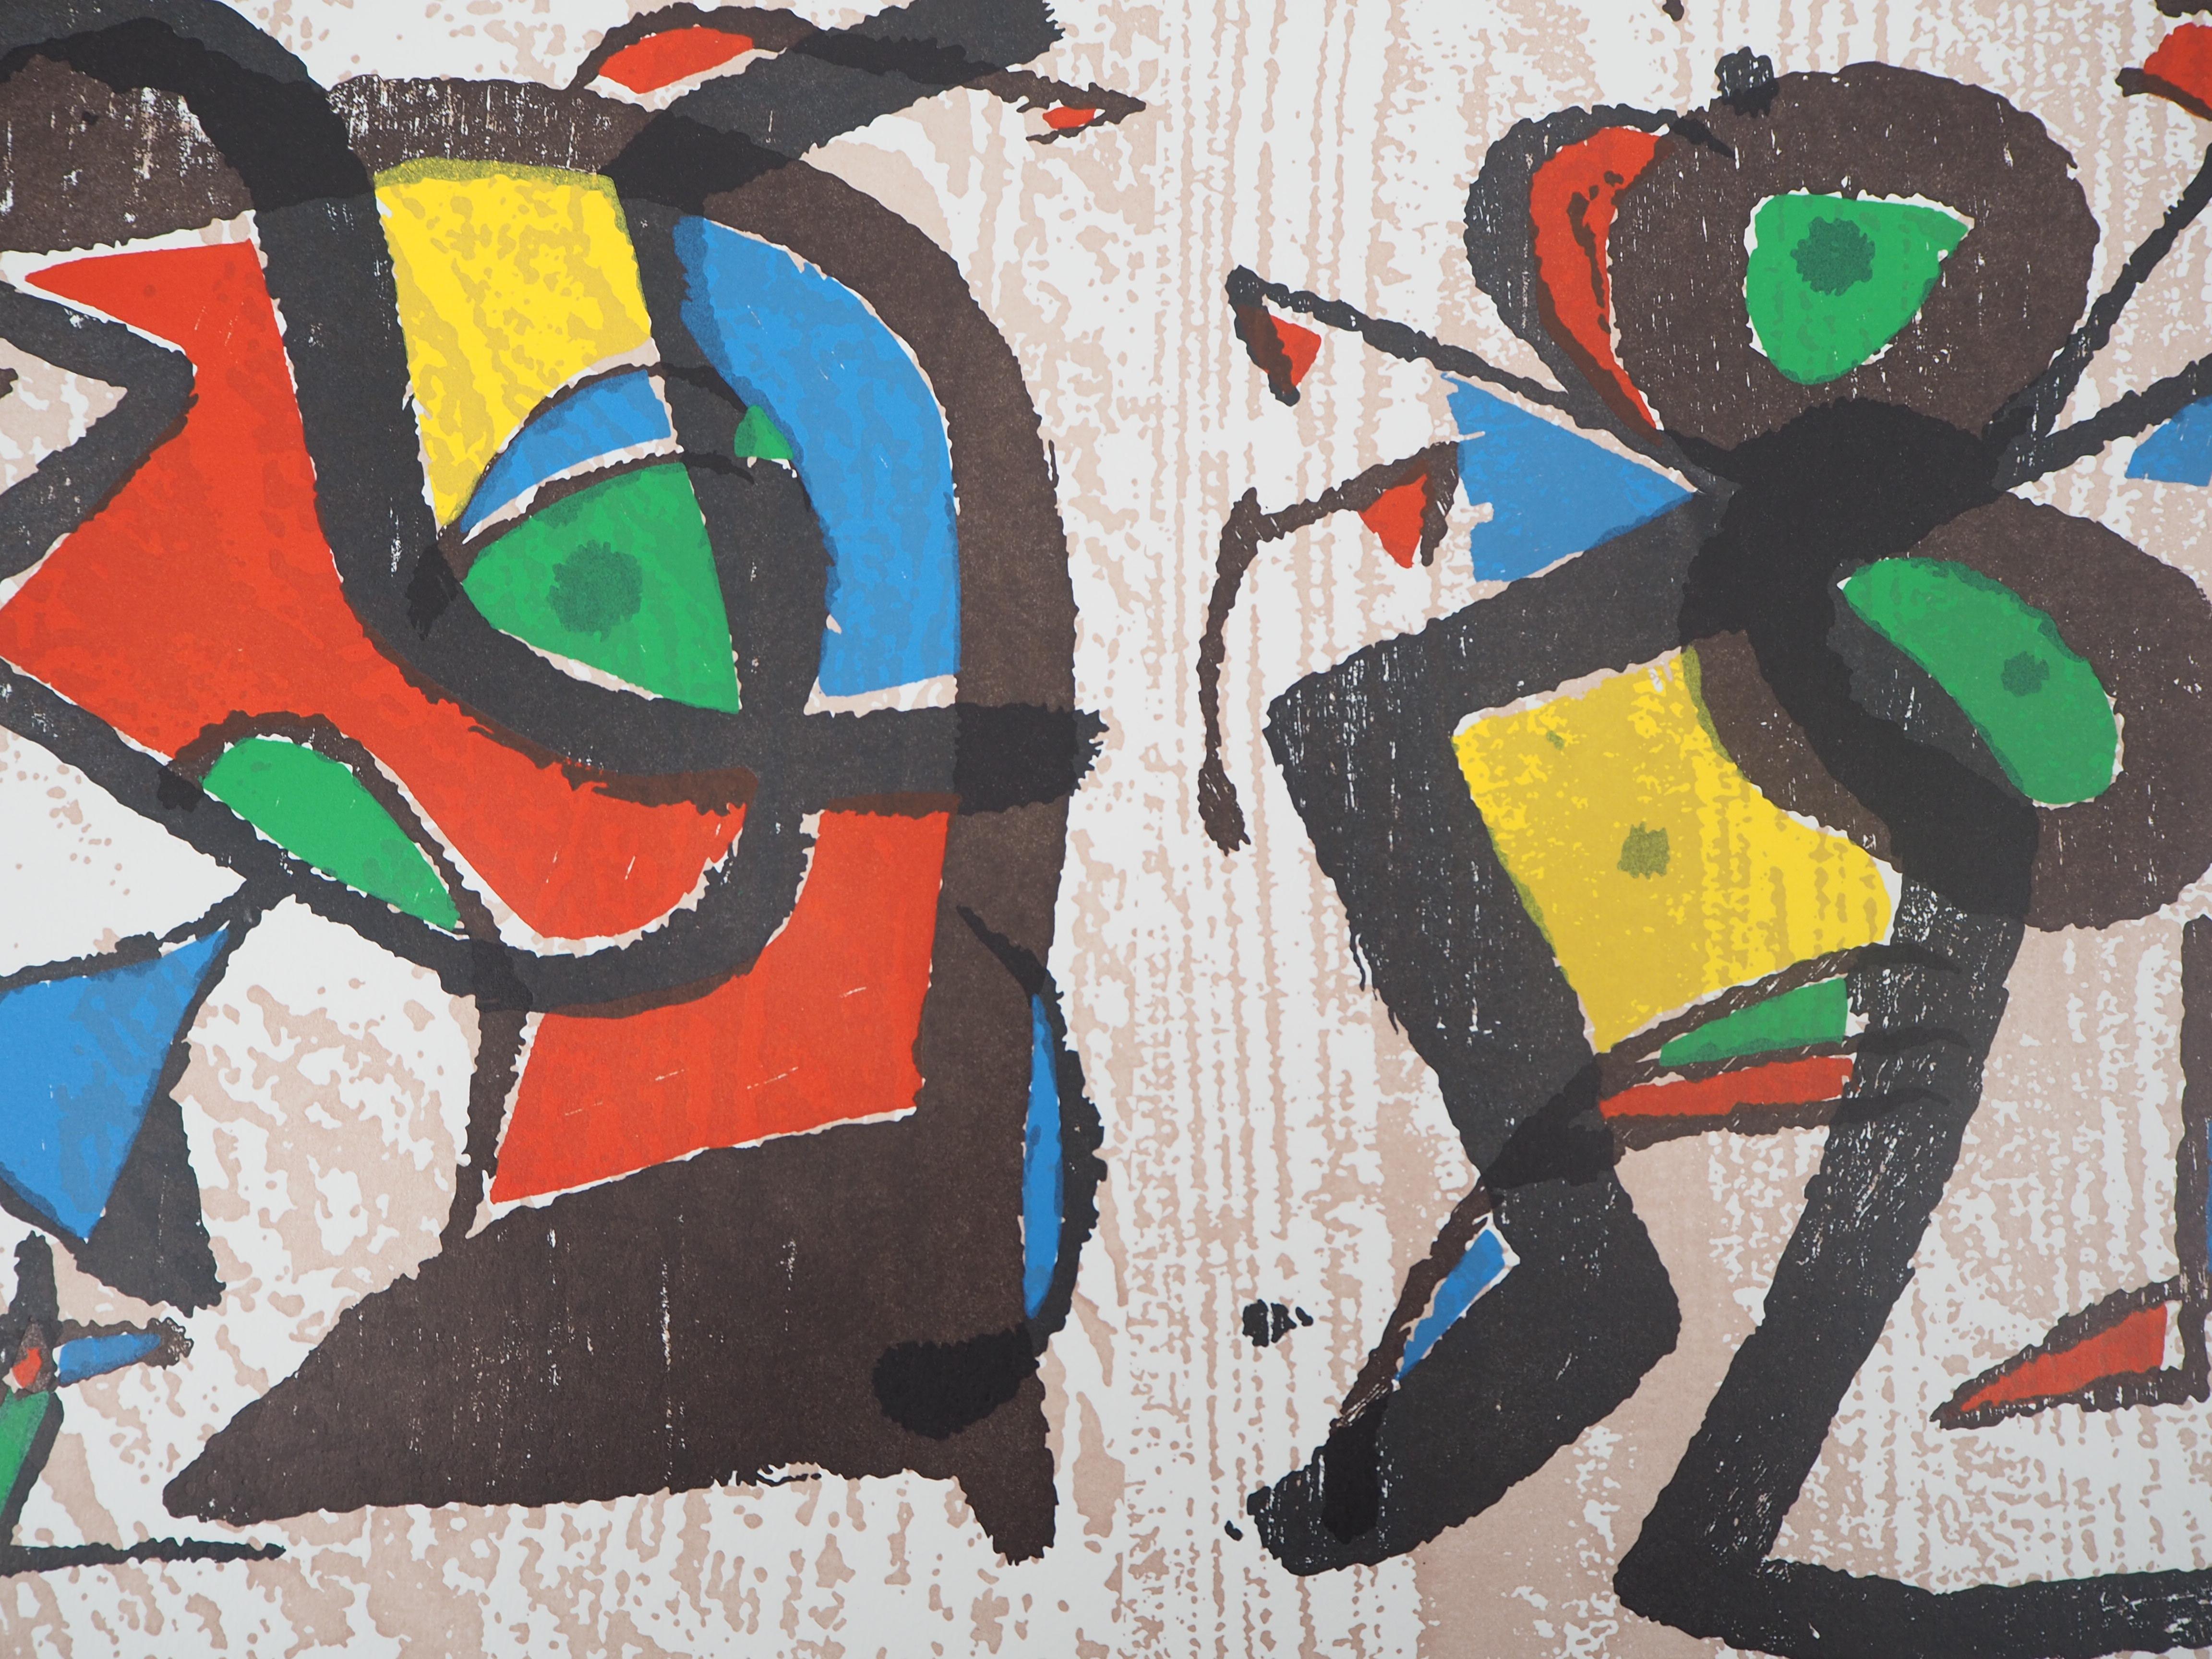 Seduction - Original woodcut (Cramer #255) - Abstract Print by Joan Miró